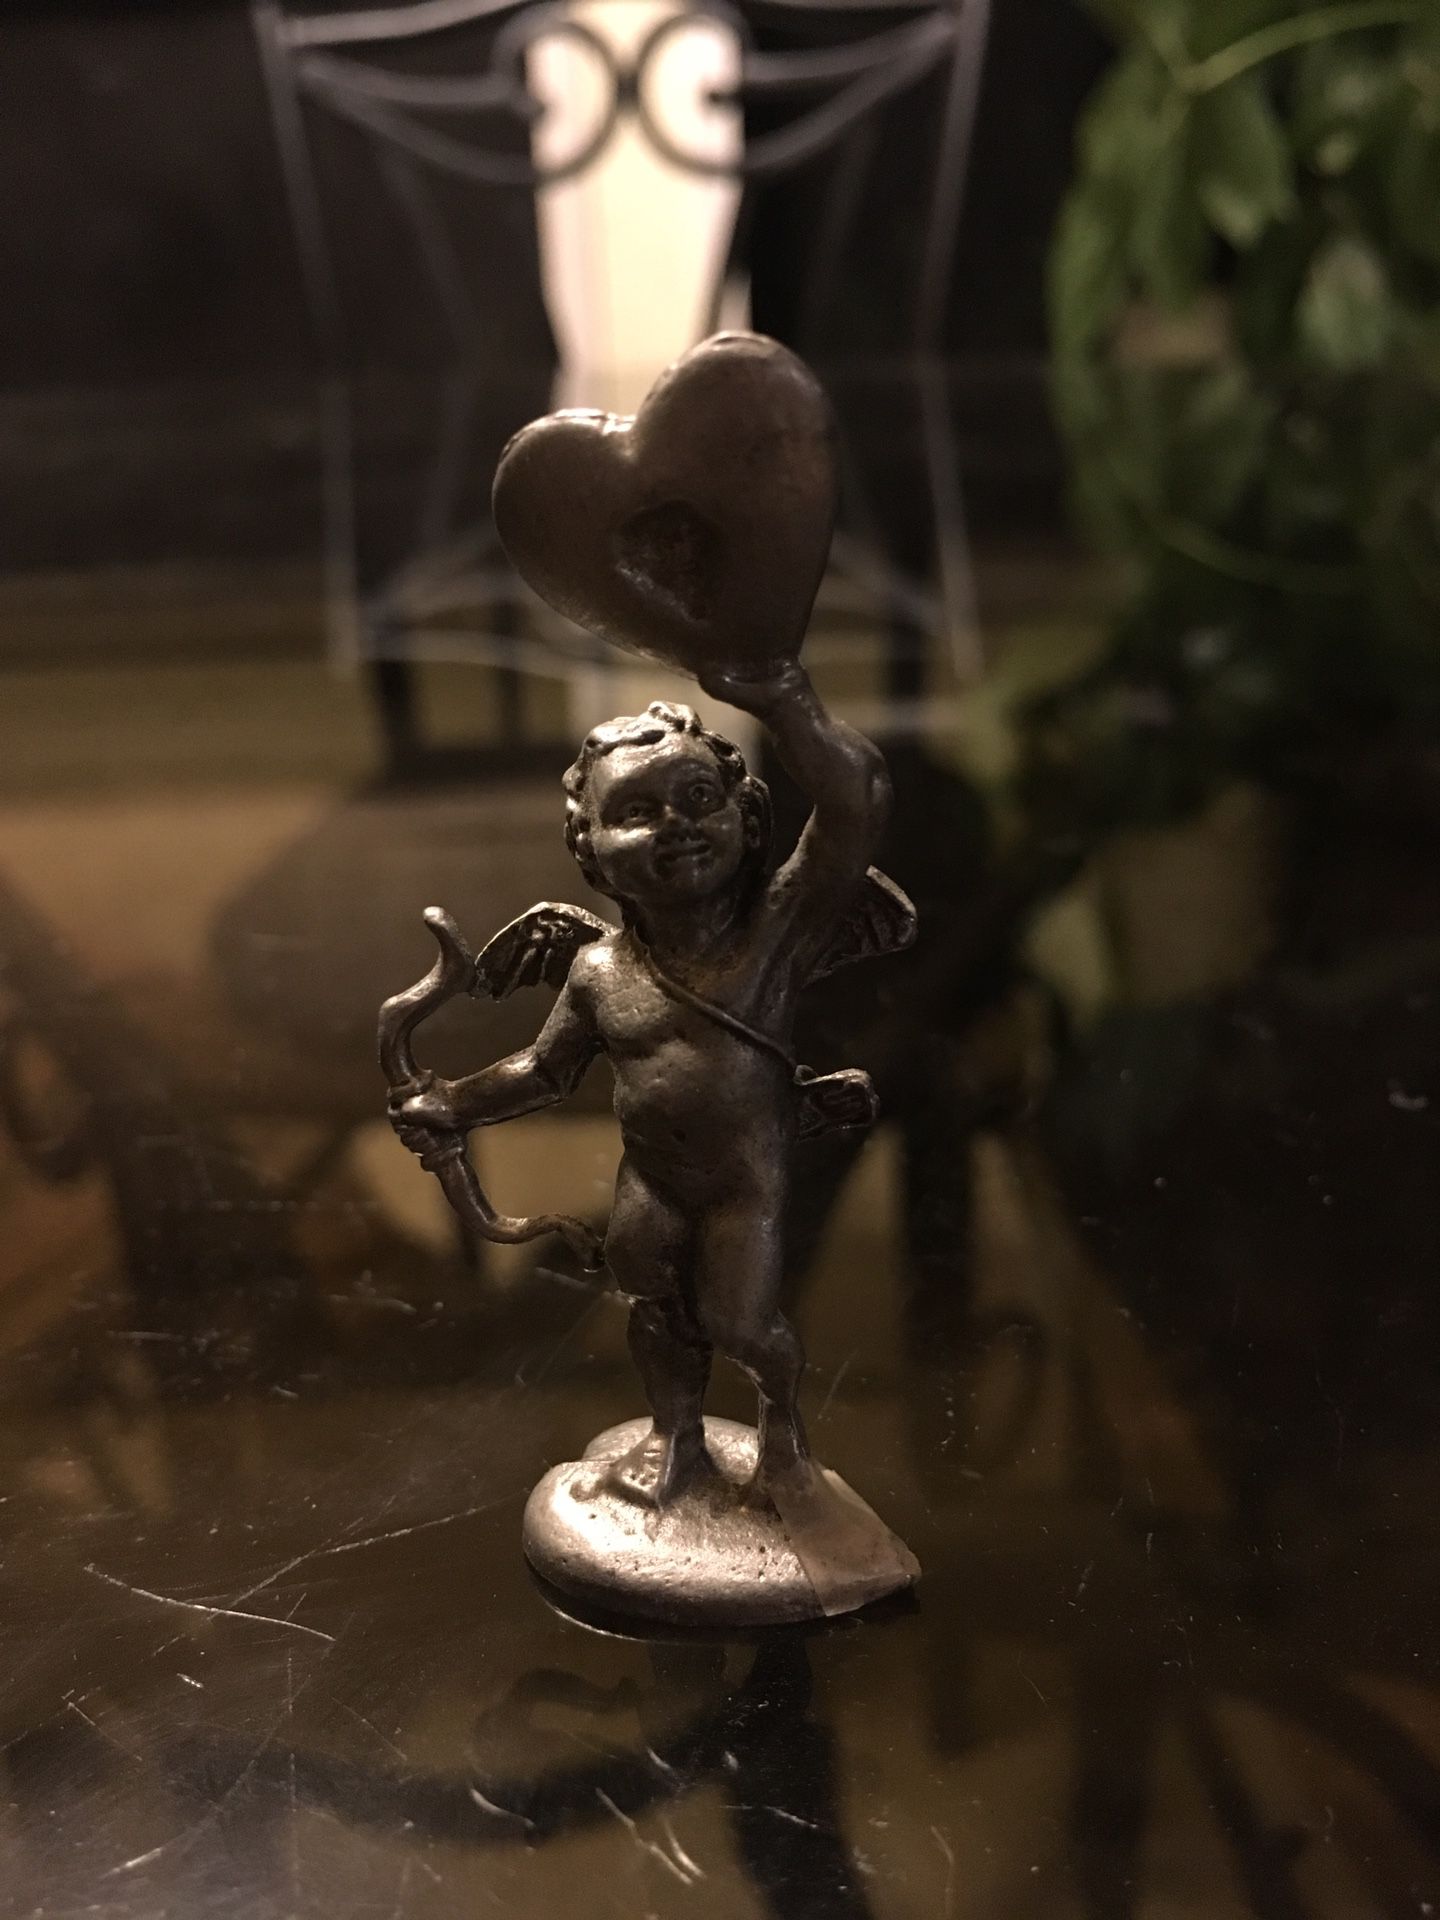 Pewter Cupid figurine